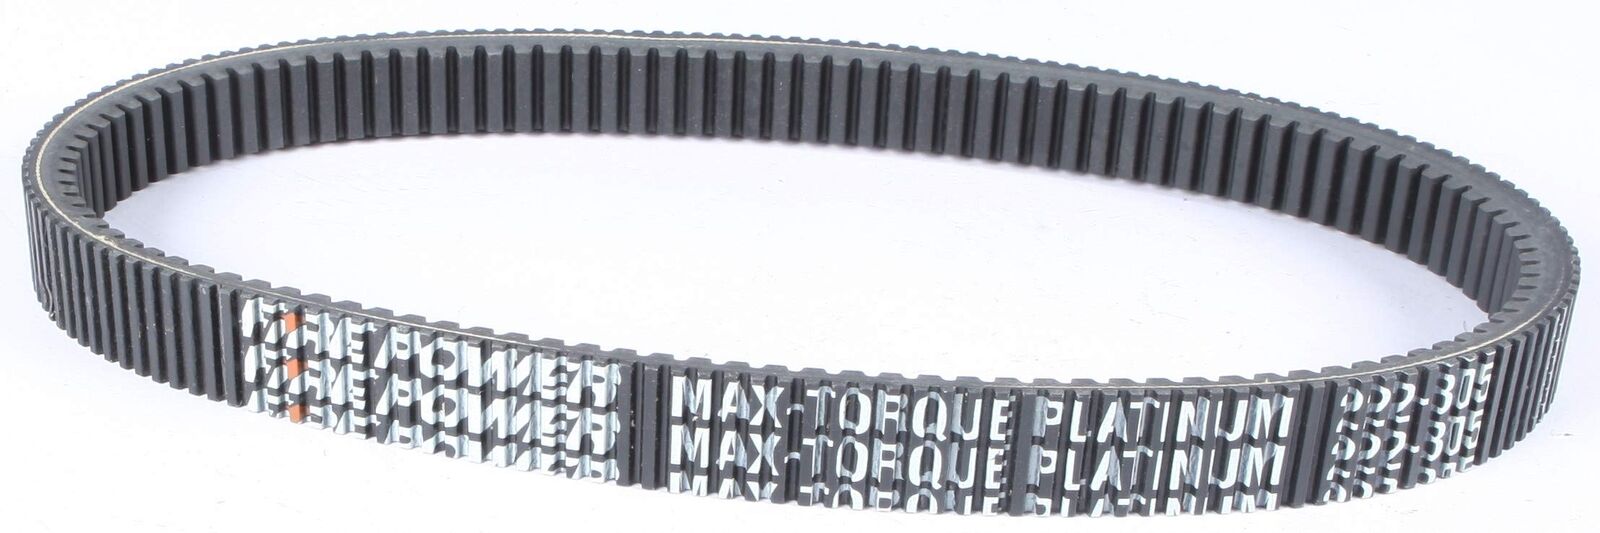 Sp1 Max-Torque Platinum Belt 44 13/16" X 1 13/32" 47-3277